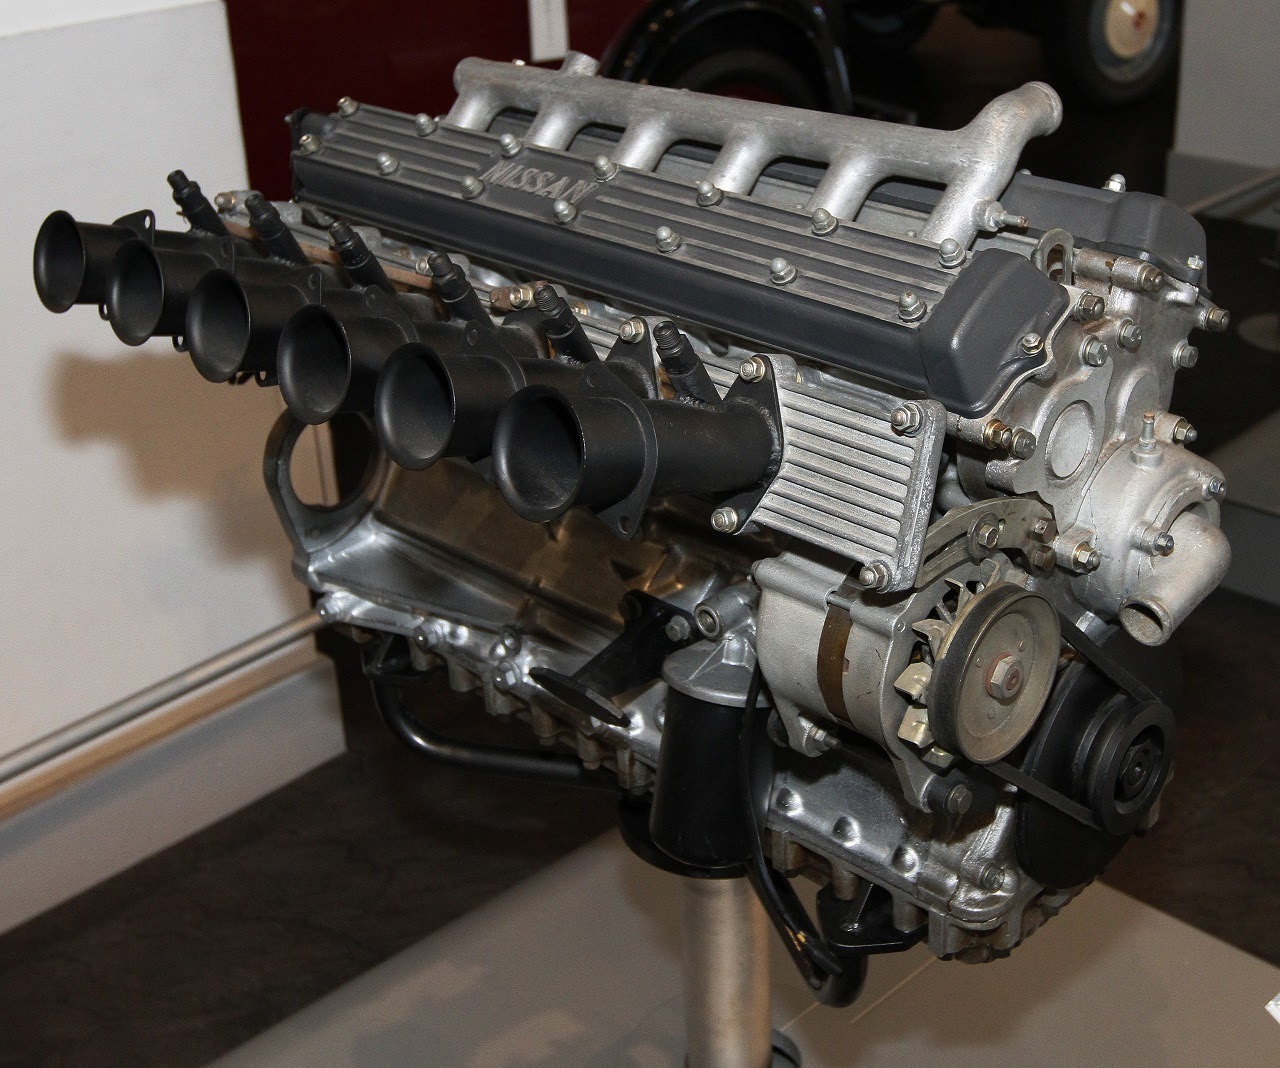 GR8型エンジン。左右分割されたヘッドカバーがまるでV型エンジンのように見える(出典：https://commons.wikimedia.org/wiki/)